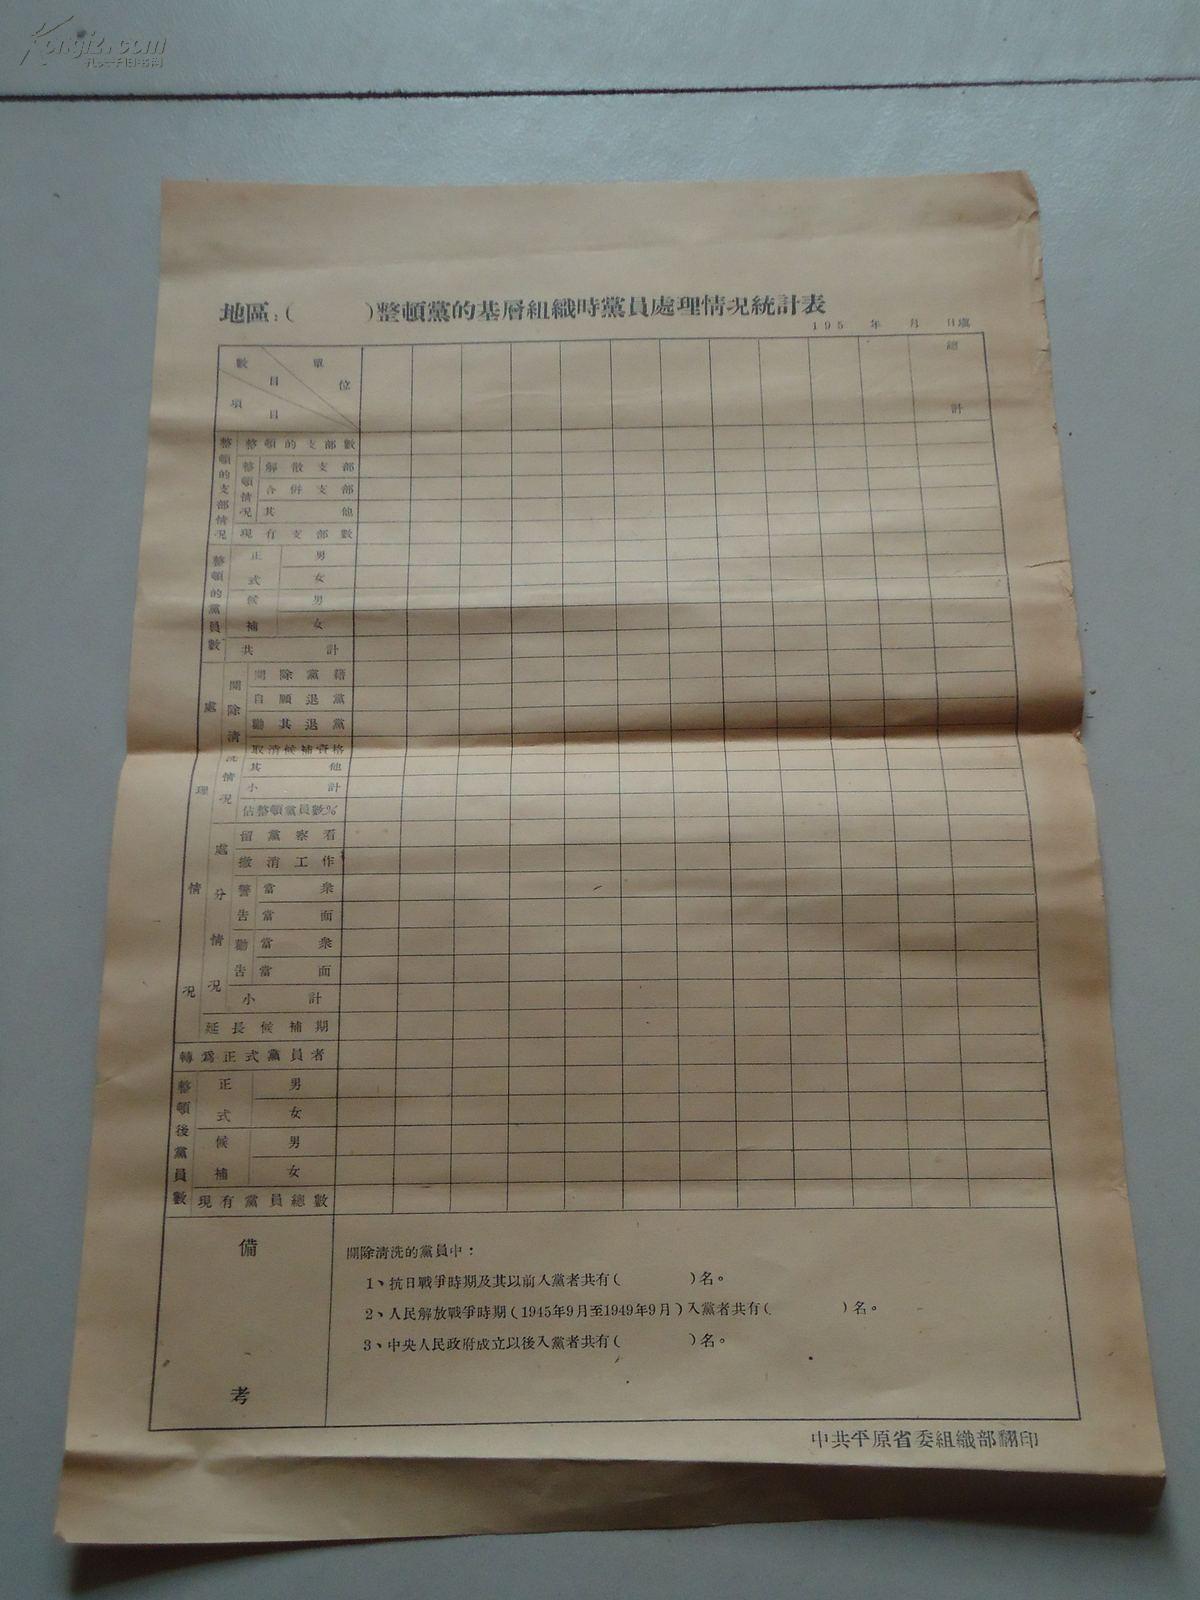 中共平原省委处理基层组织时党员的统计表